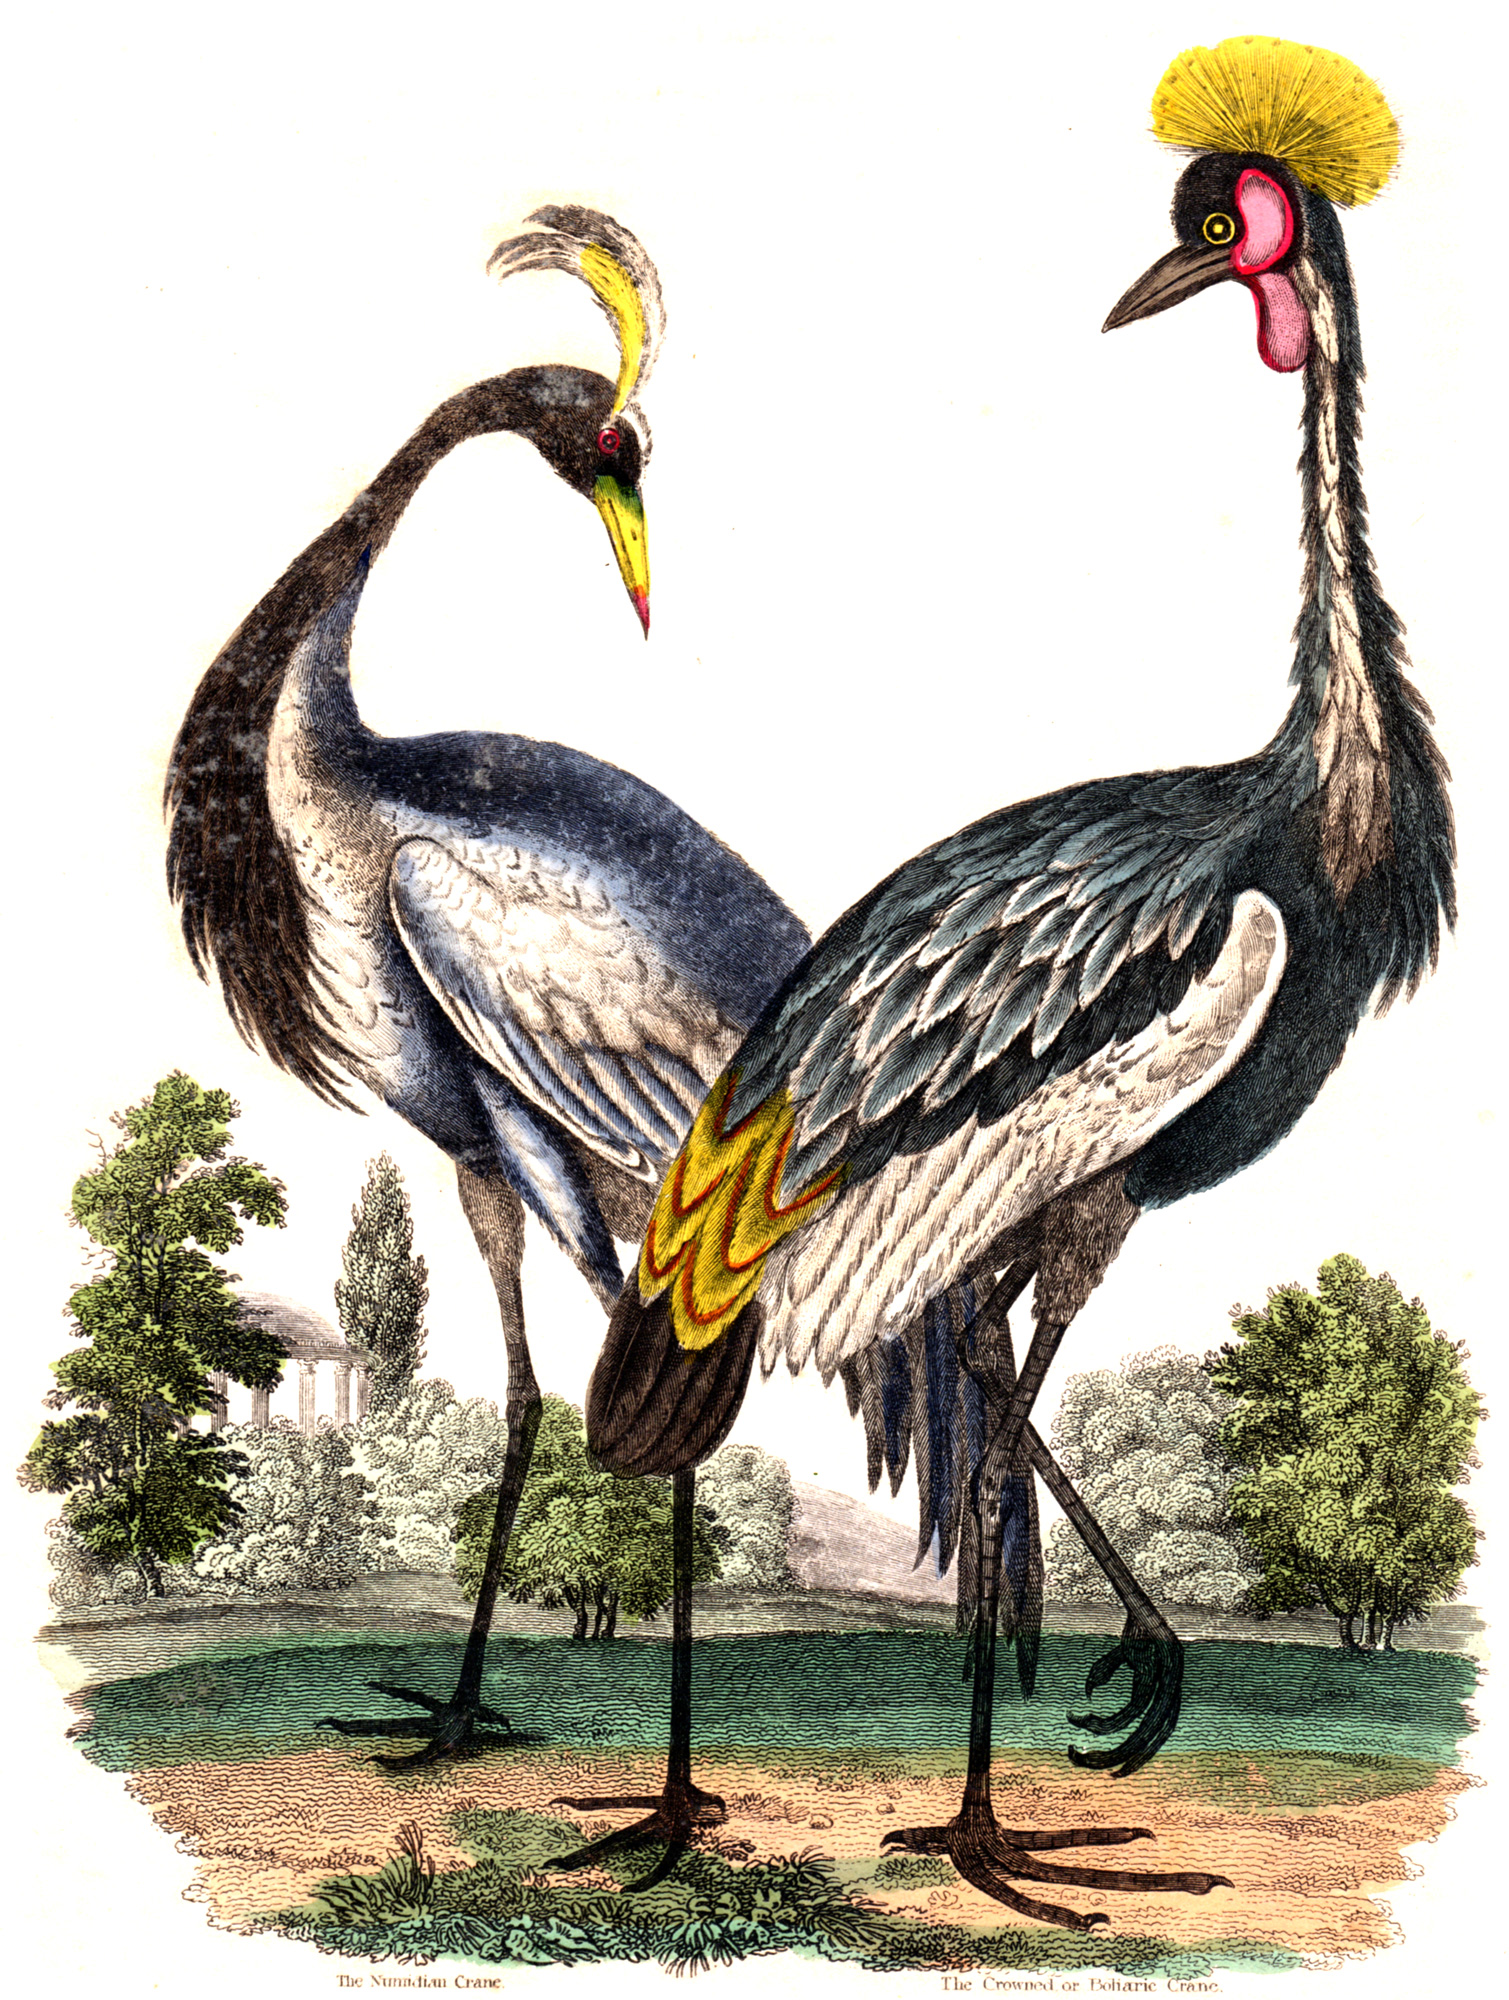 Buffon, Comte de – A Natural History 1834